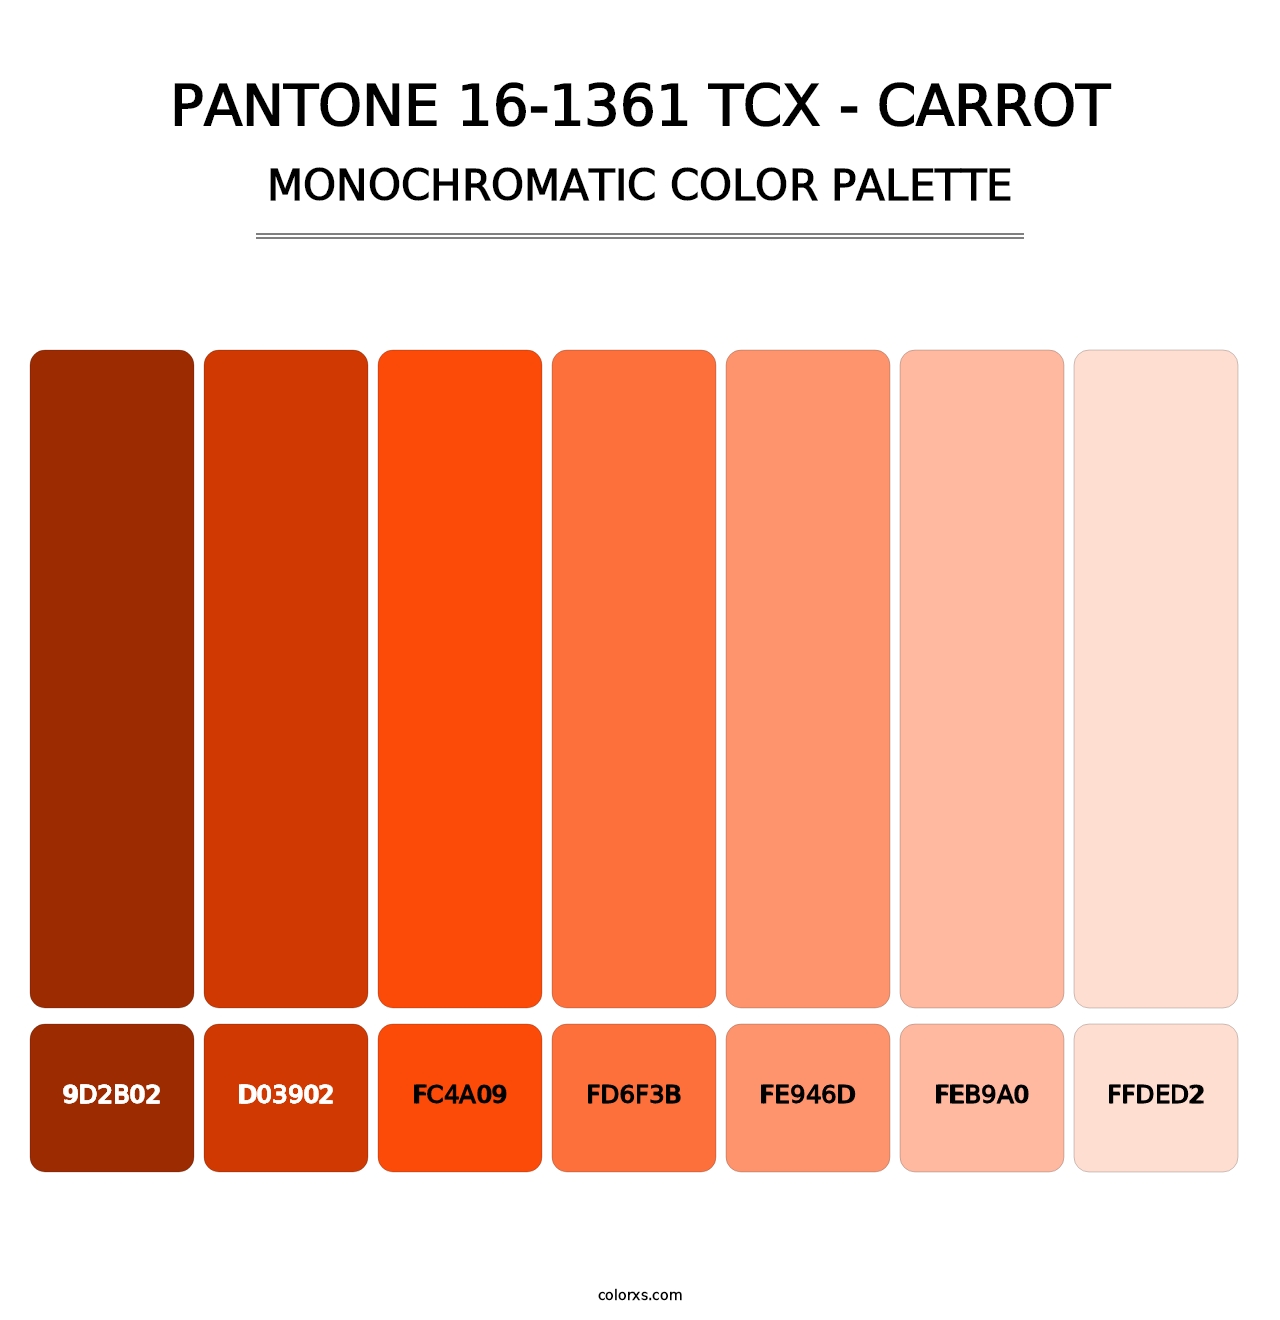 PANTONE 16-1361 TCX - Carrot - Monochromatic Color Palette